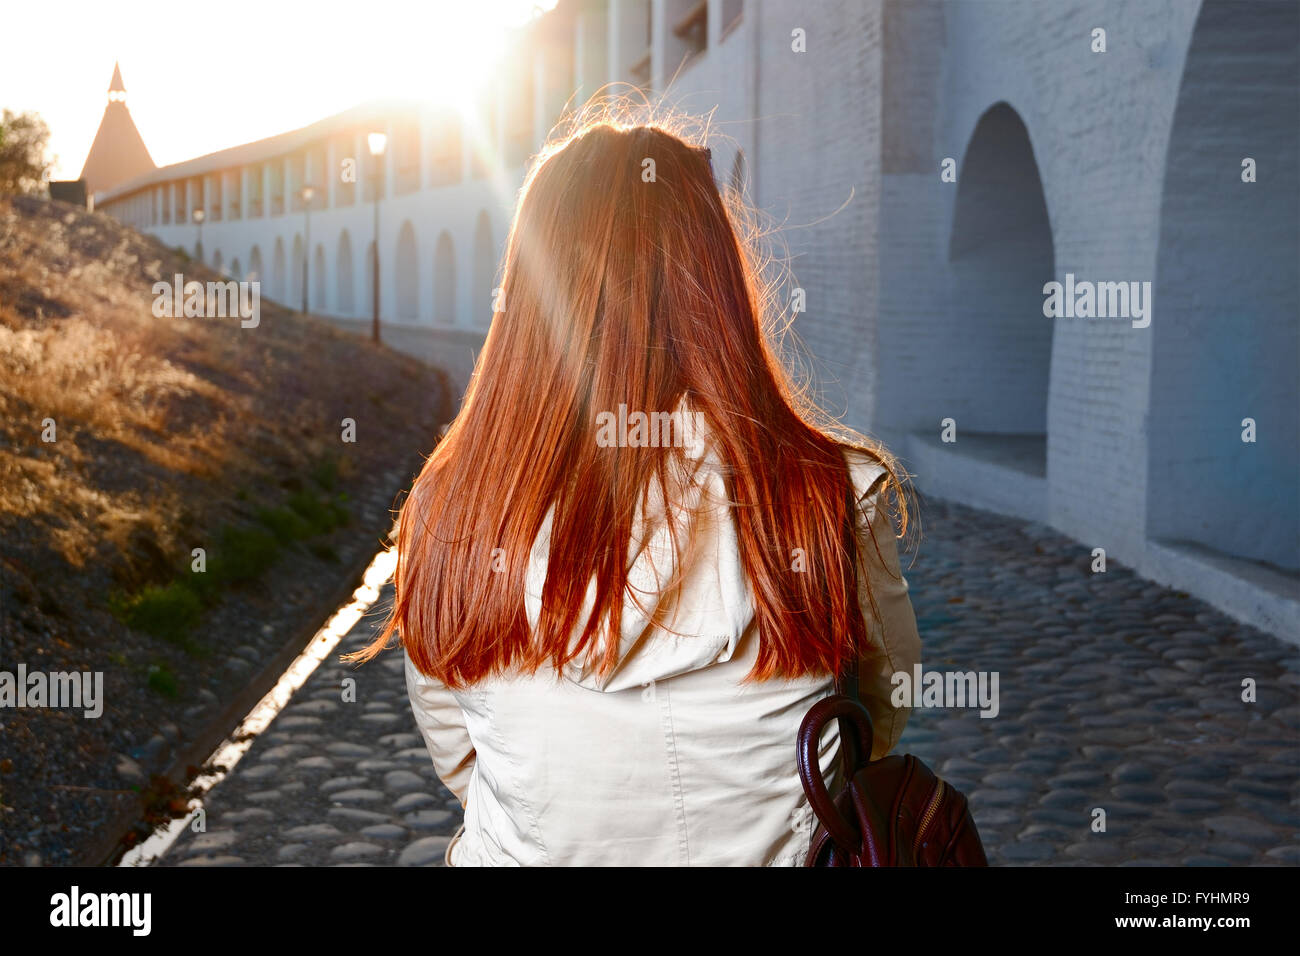 Vista posteriore del rosso donna dai capelli a piedi in strada nei pressi della vecchia fortezza in Europa retroilluminata con sunflares Foto Stock